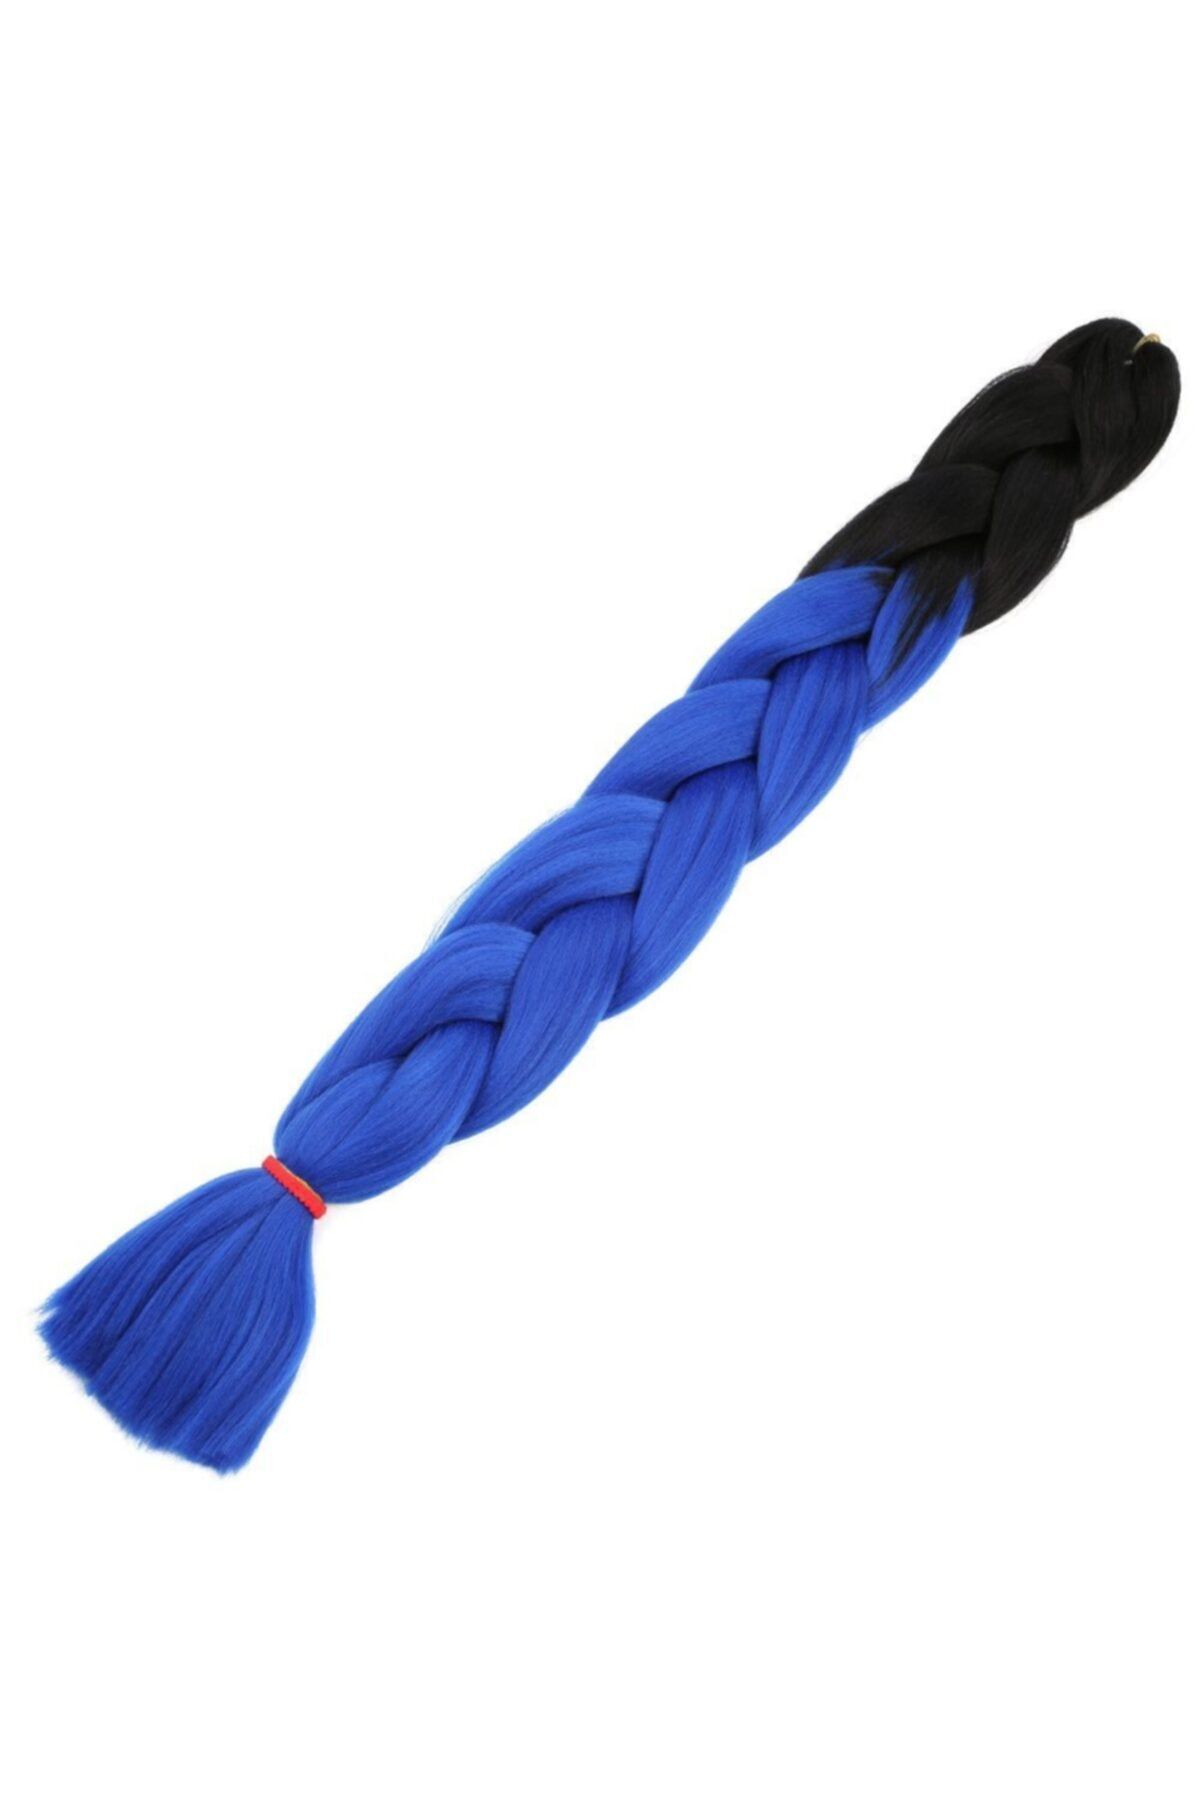 Marpessa Afrika Örgüsü Ve Rasta Için Sentetik Ombreli Saç - Siyah / Koyu Mavi Ombreli